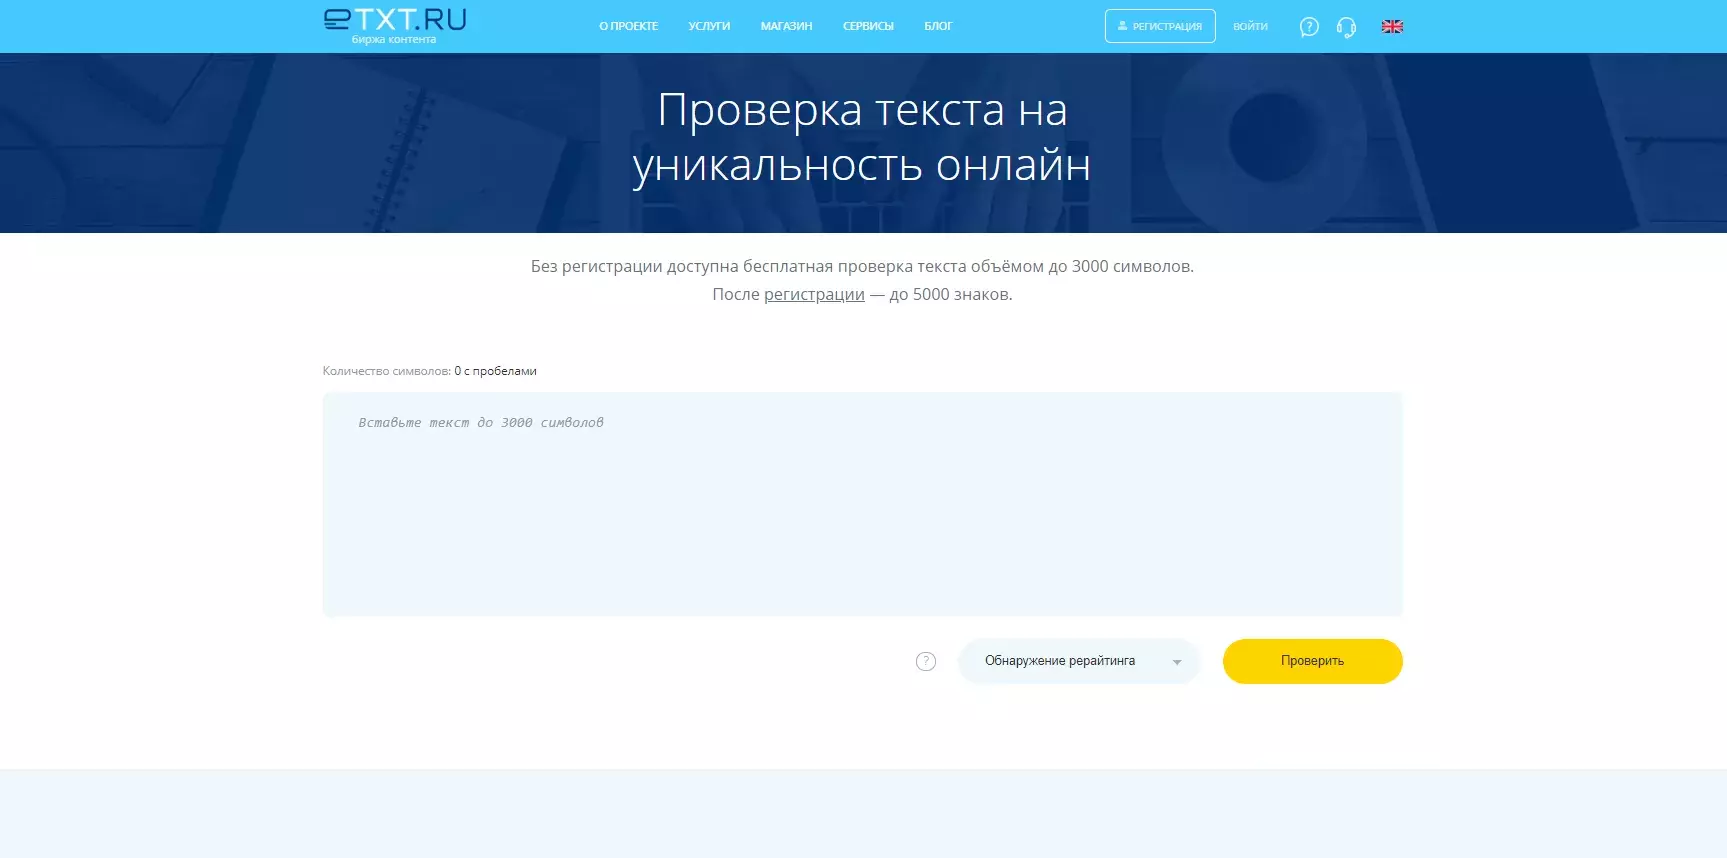 Как проверить текст на уникальность с помощью etxt.ru